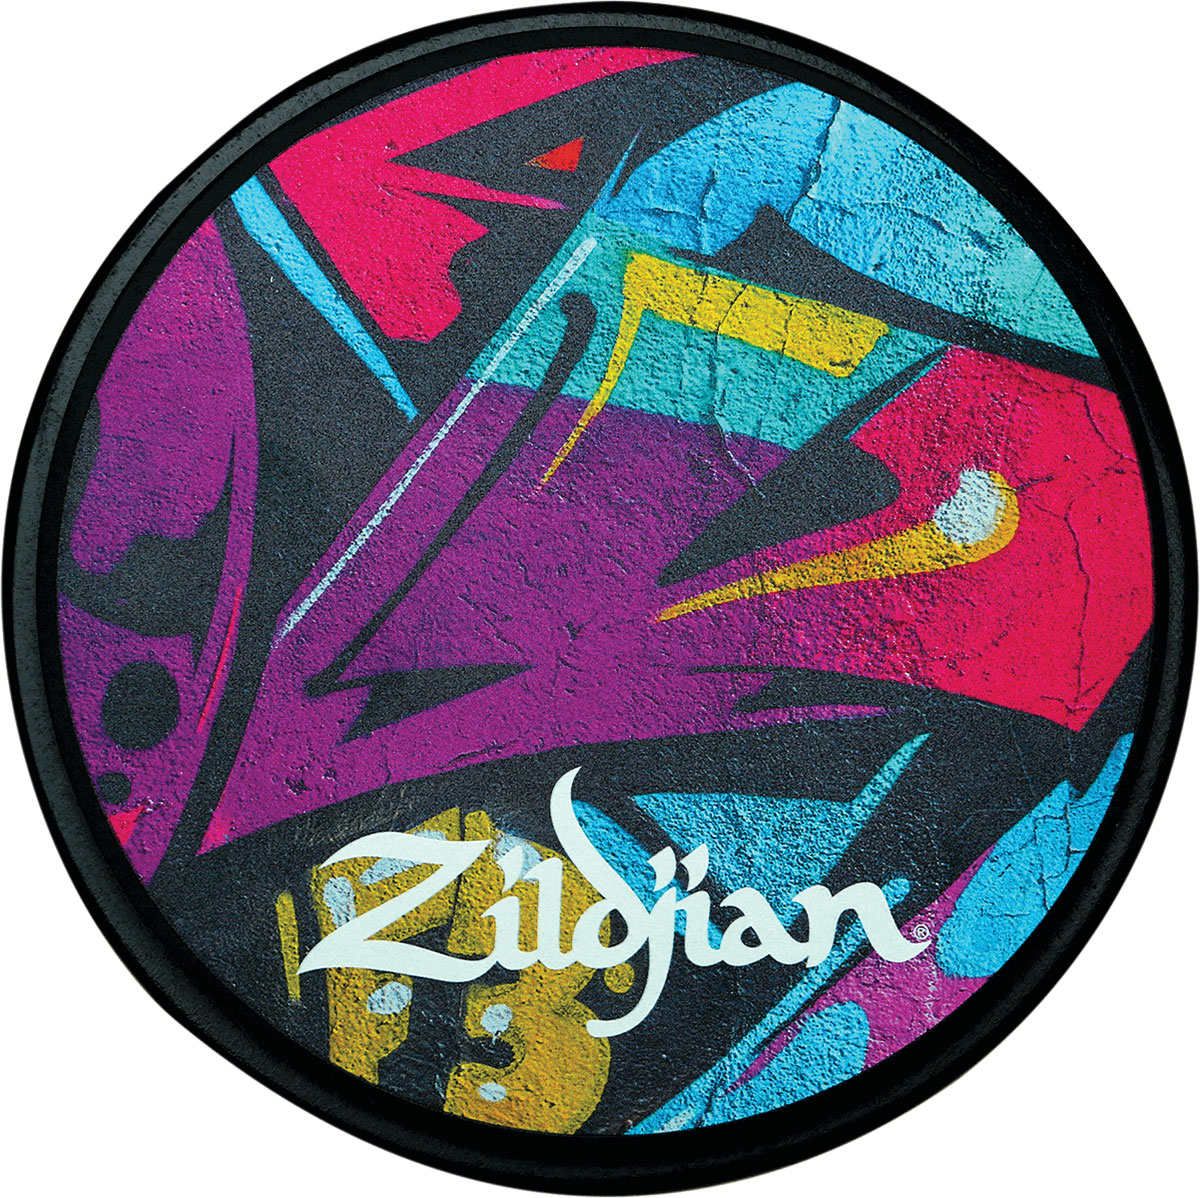 ZILDJIAN ACCESSORIES ZXPPGRA12 - PAD D'ENTRAINEMENT 12